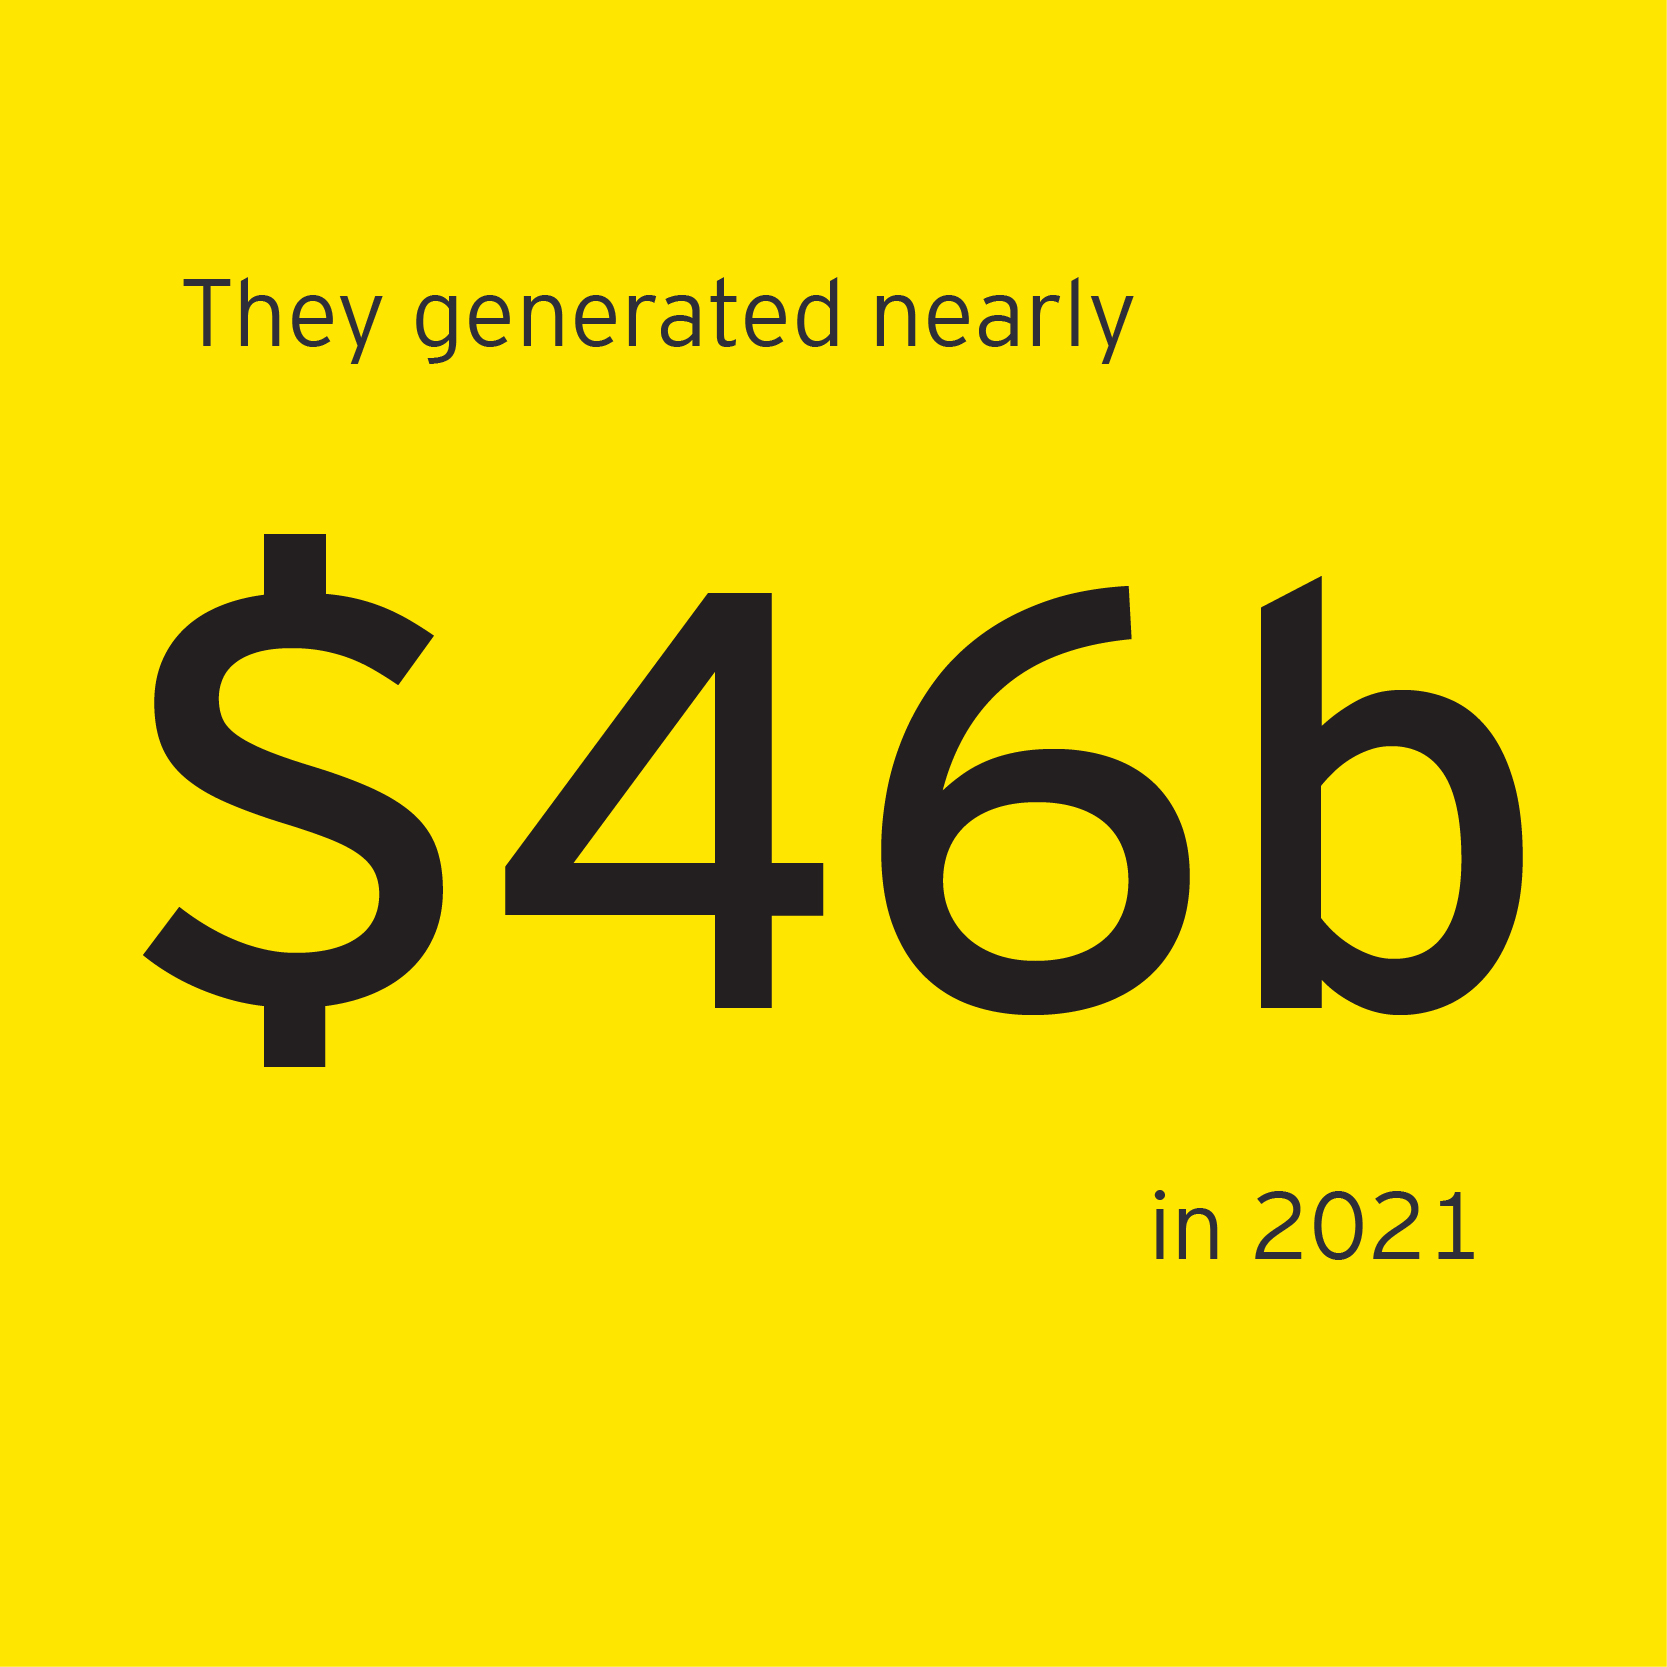 Nearly $46 billion in revenue generated by EOY winners in 2021